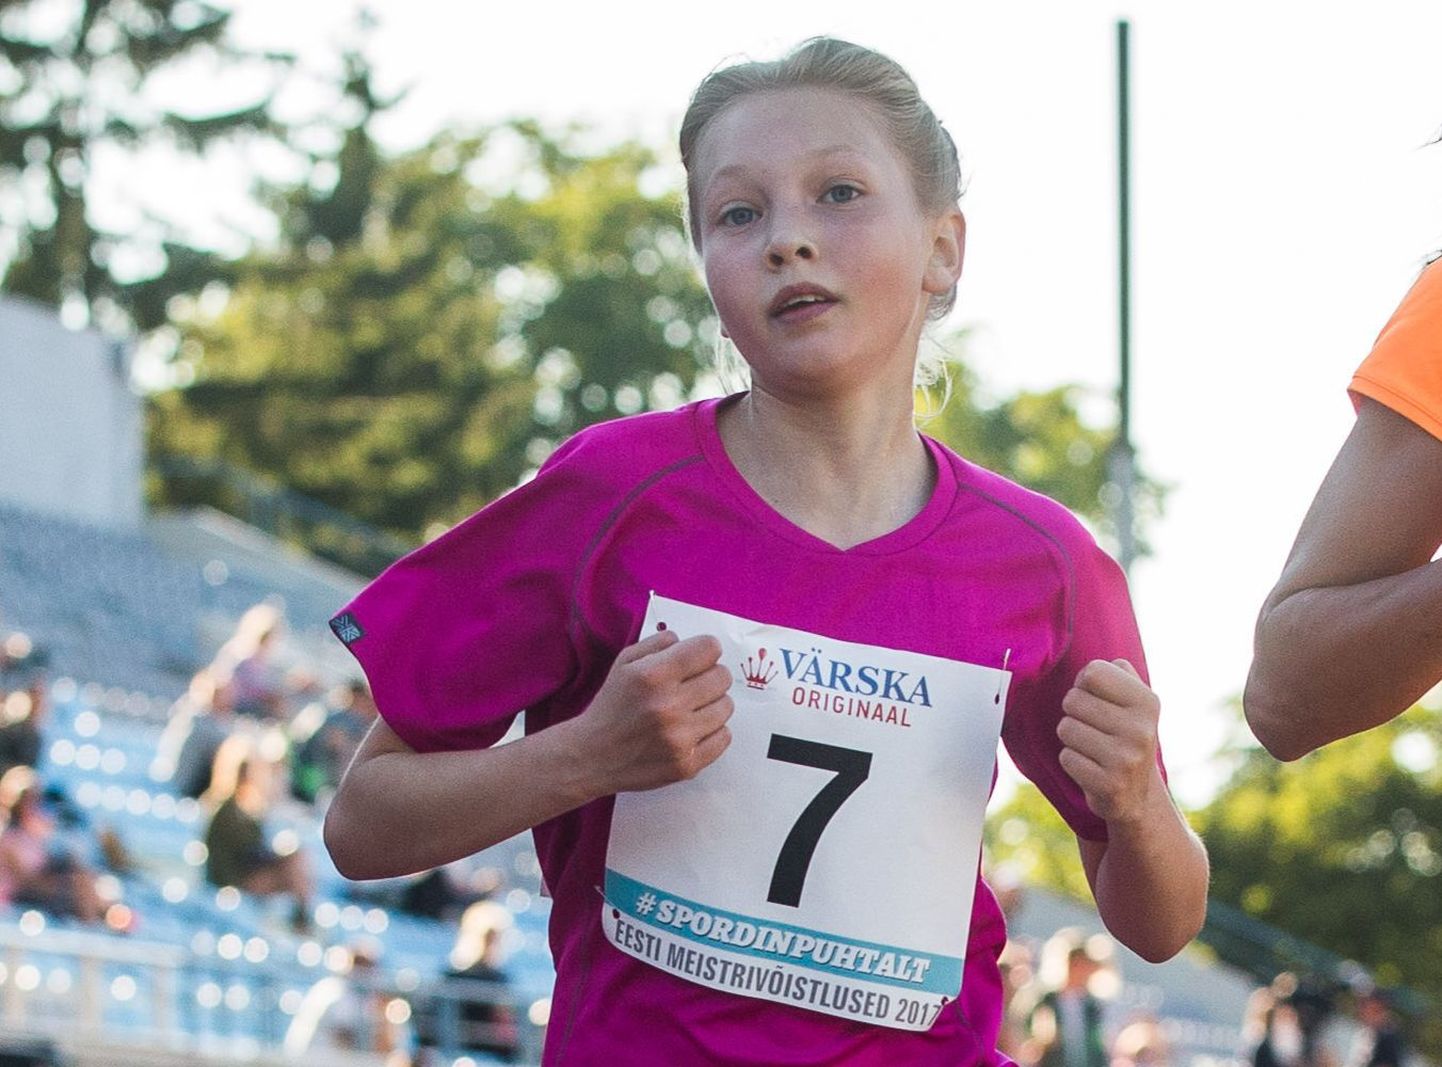 Kohtla-Järvelt pärit 12-aastane Luna-Aleksandra Lagoda võitis staieri seeriajooksu kolmanda etapi. Pilt on tehtud tänavustelt Eesti täiskasvanute meistrivõistlustel.